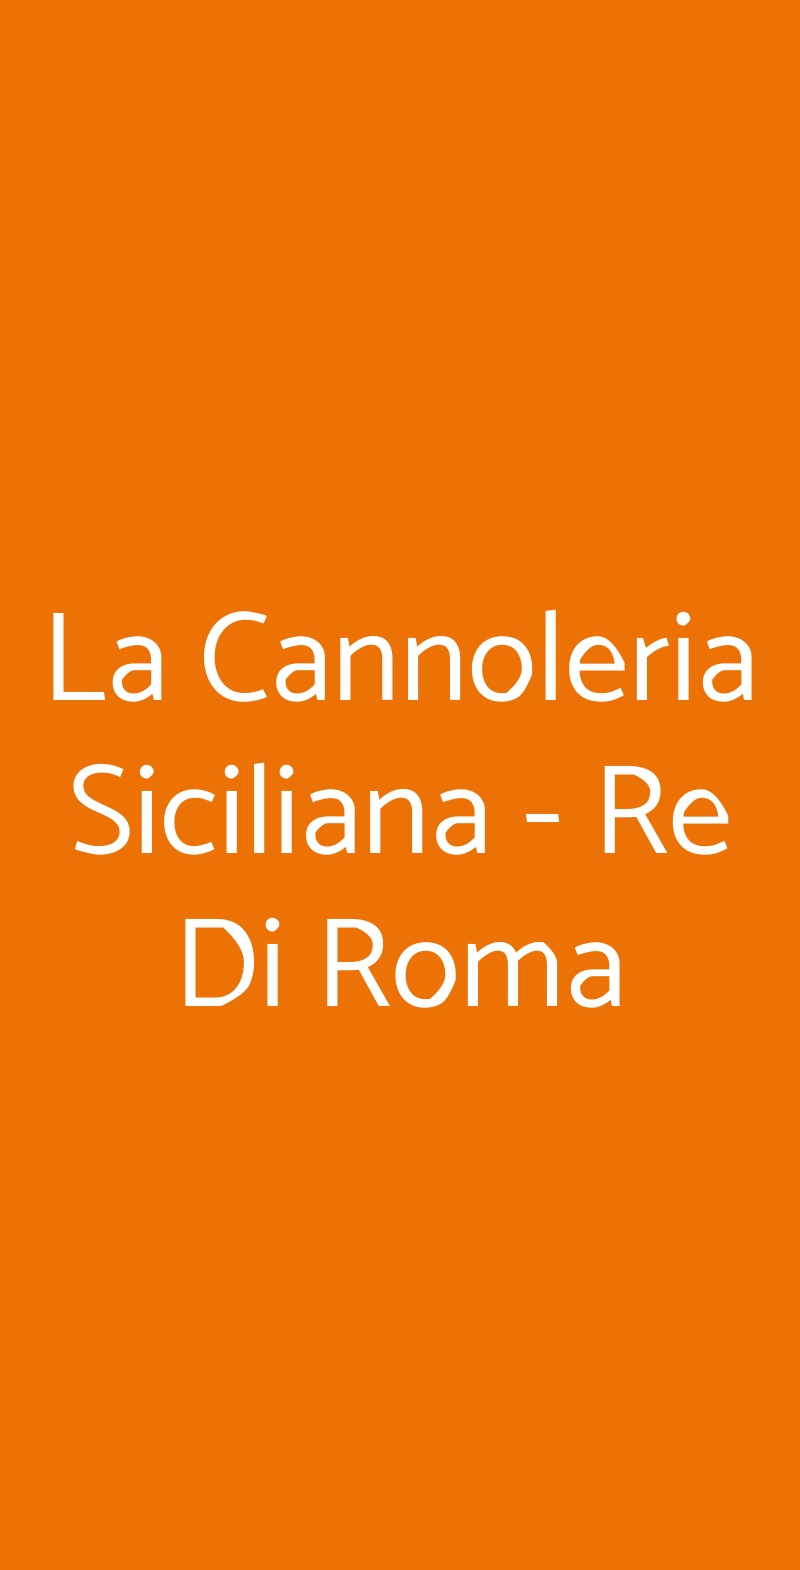 La Cannoleria Siciliana - Re Di Roma Roma menù 1 pagina